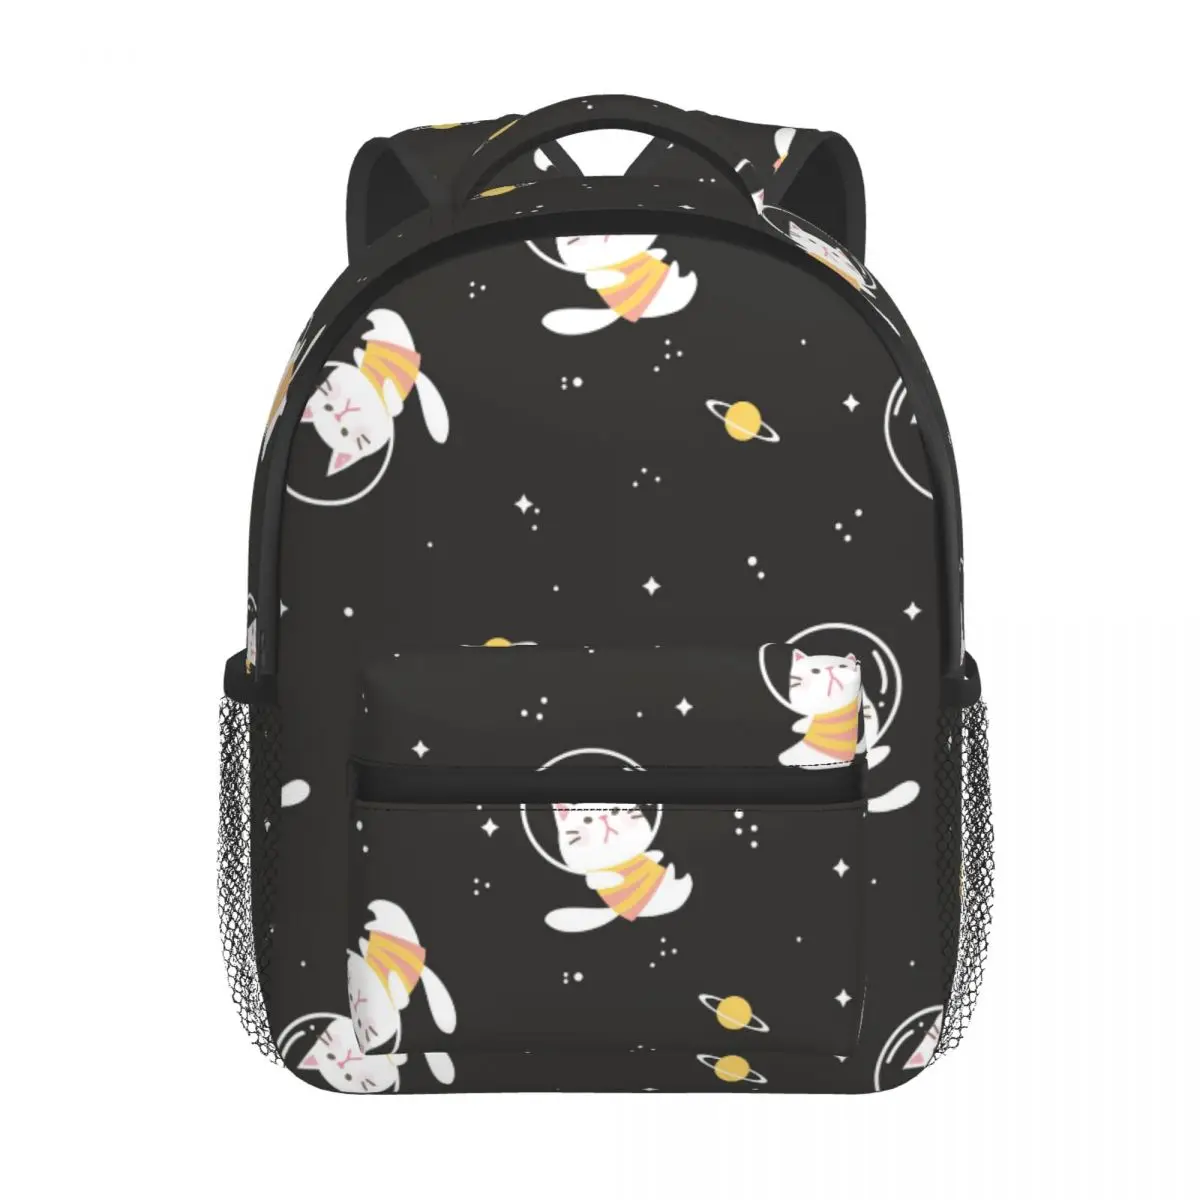 Cartoon Cat Floating In The Space Area With Star Baby Backpack Kindergarten Schoolbag Kids Children School Bag